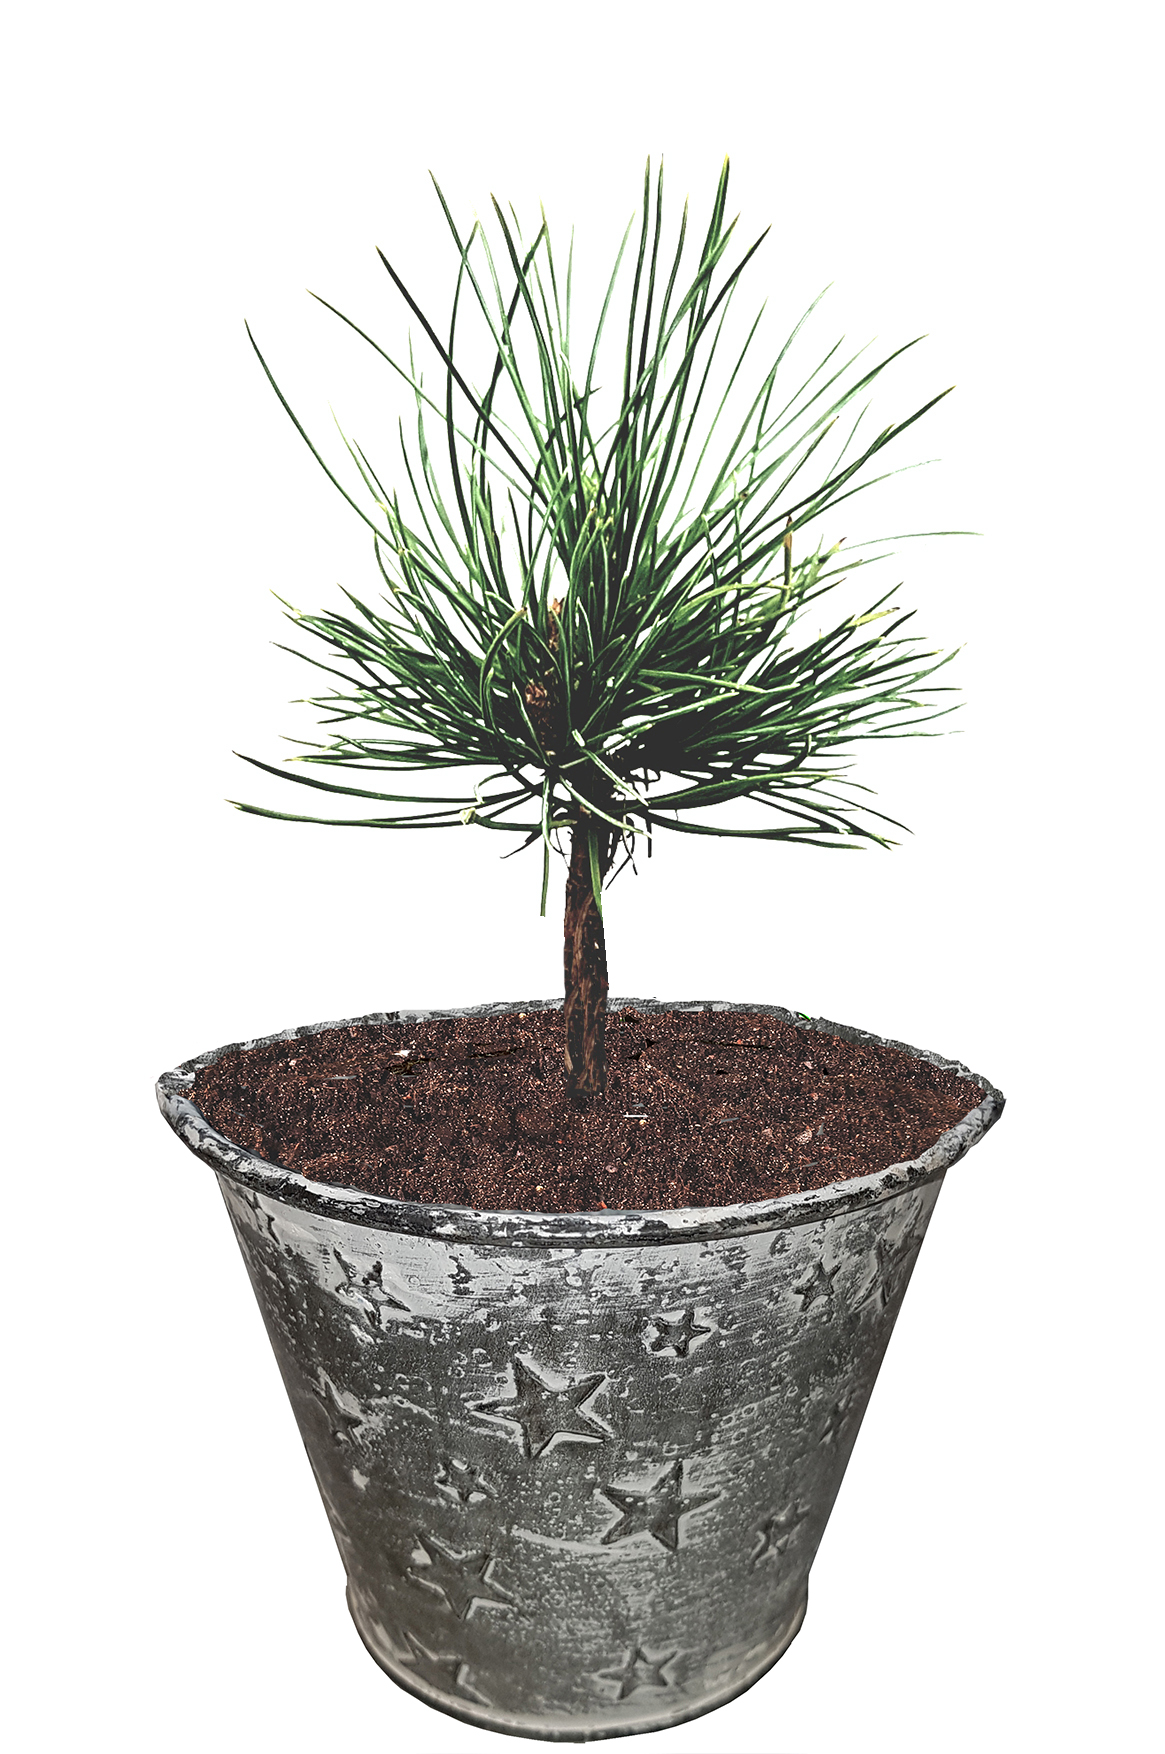 Seedeo® Zirbel-Kiefer/Zirbe (Pinus cembra) ca. 10 cm hoch Geschenkedition Topf mit Sternen